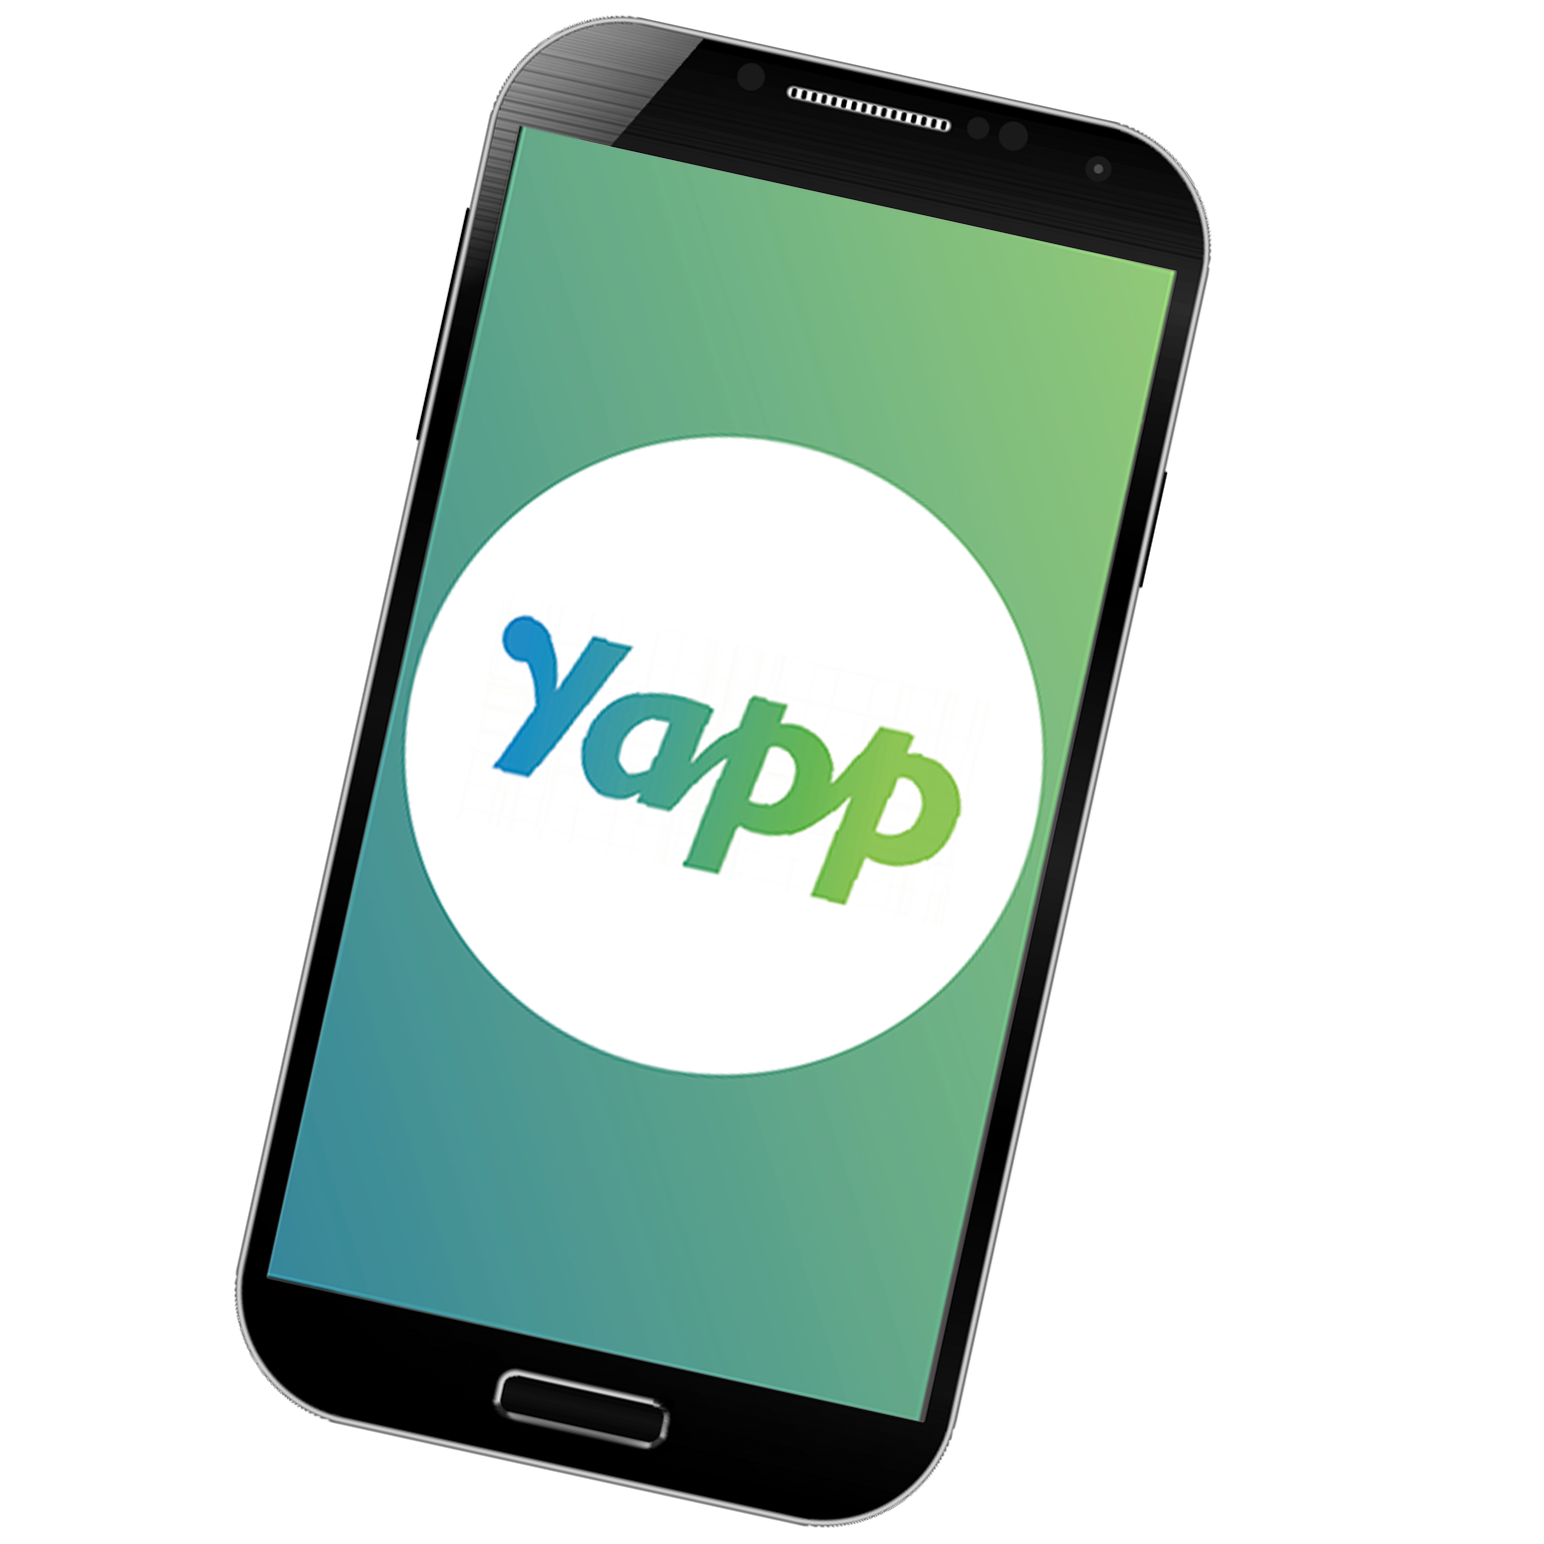 Yapp Phone